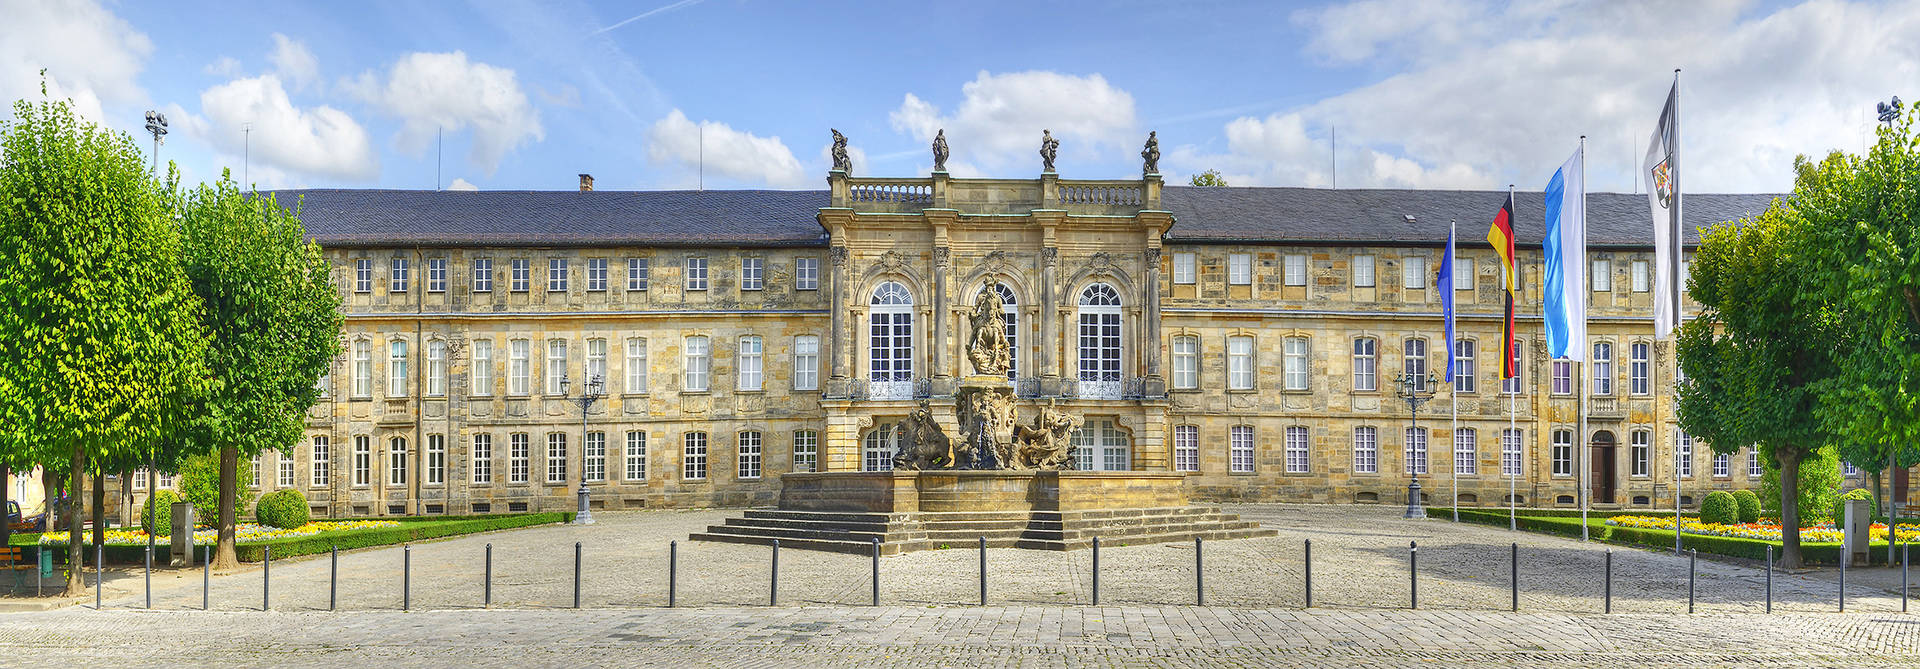 Nouveau château - H4 Hotel Residenzschloss Bayreuth - Site internet officiel